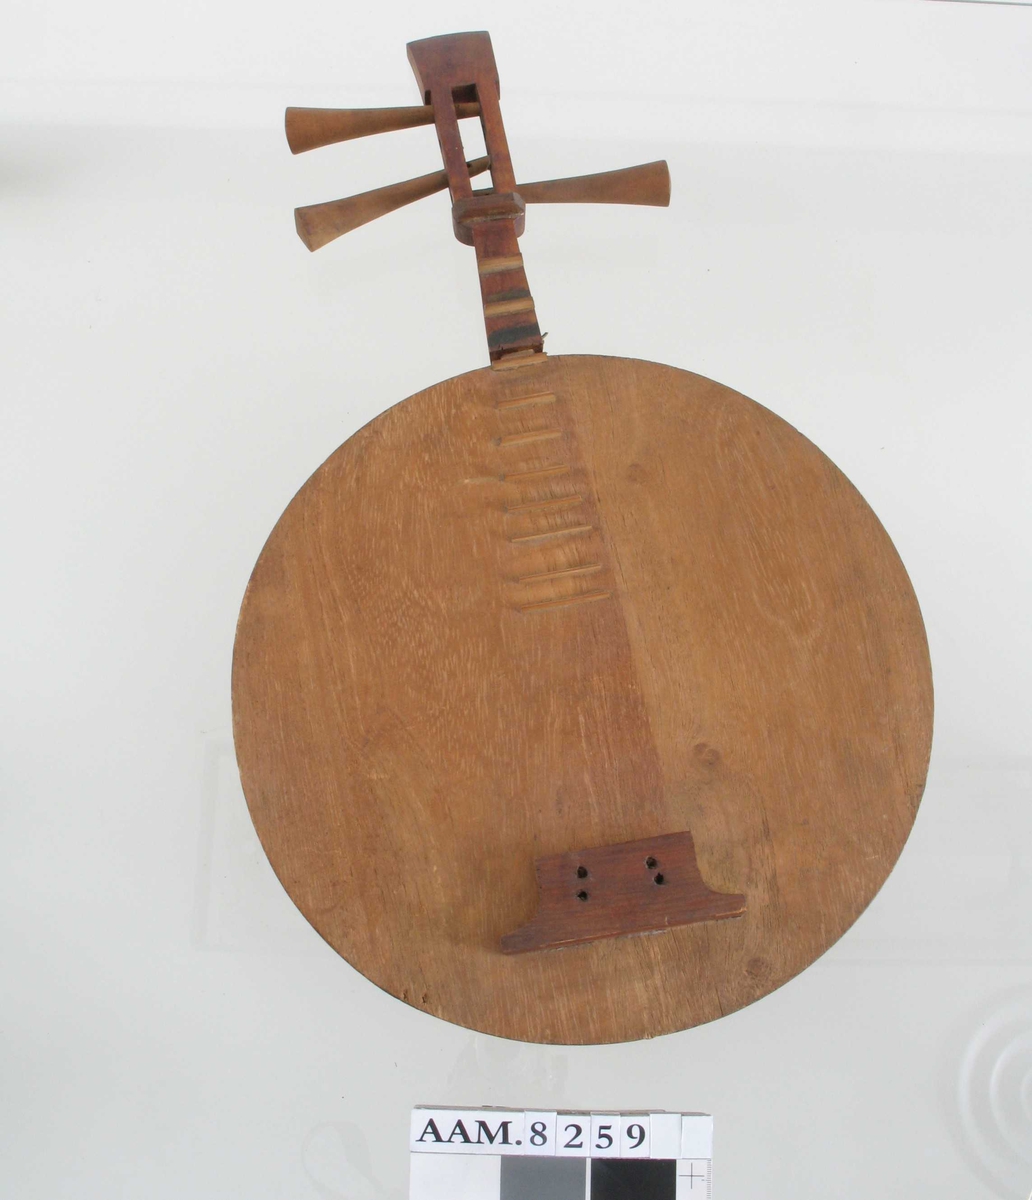 Instrumentet består av en forholdsvis stor kasse og et  forholdsvis  kort skaft. Strengeinstrument, men nå uten strenger. Buen er  laget av   bambus  og knyttet fast til instrumentet.  